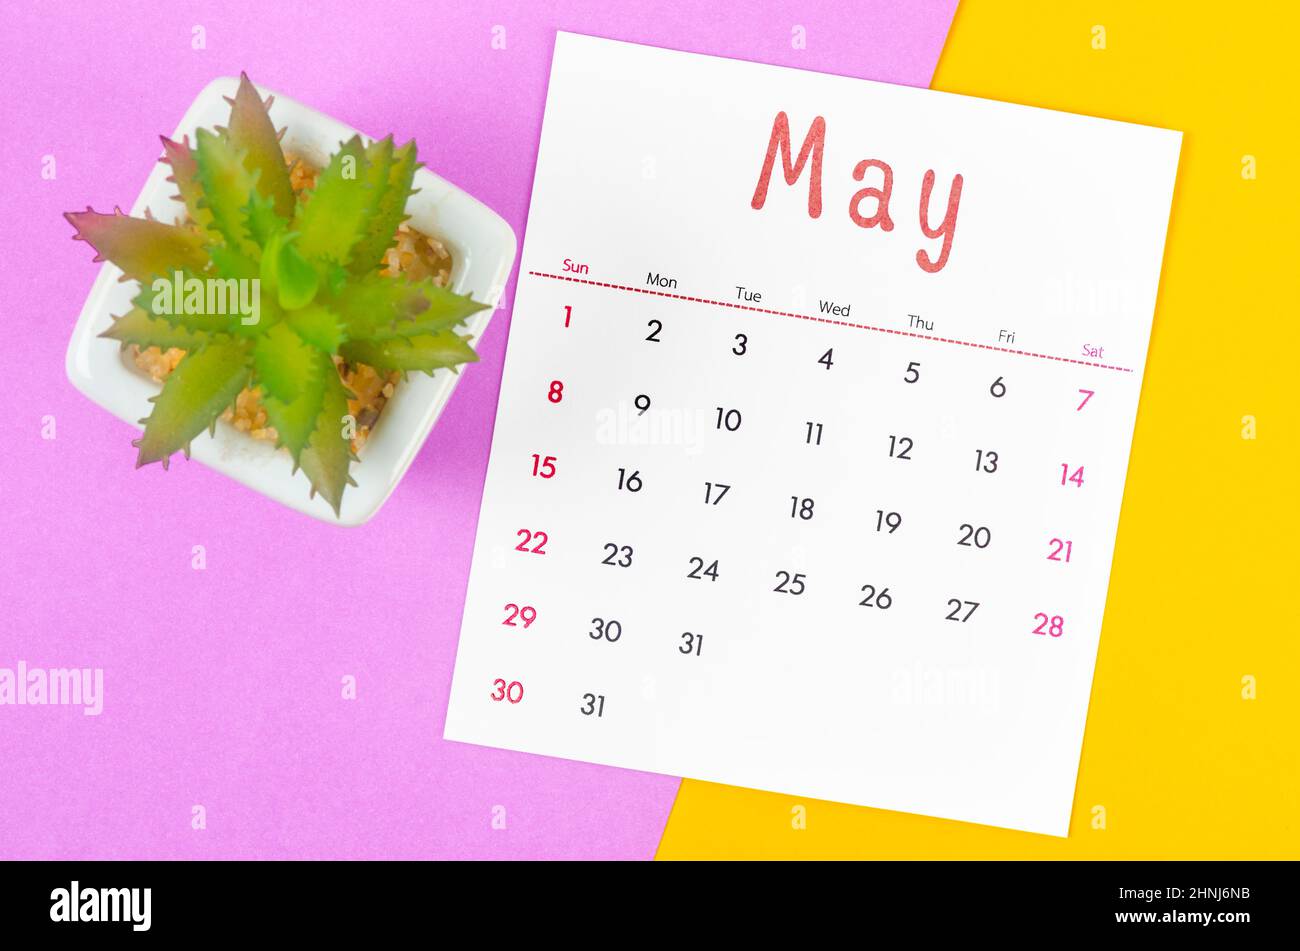 Hình nền máy tính lịch tháng 5 năm 2022: Sắp đến tháng 5 năm 2022, hãy trang trí màn hình máy tính của bạn với hình nền lịch tháng 5 năm 2022 đầy sống động. Mỗi ngày, bạn sẽ được nhắc nhở về các sự kiện quan trọng và cảm nhận sự mới mẻ của mùa xuân.